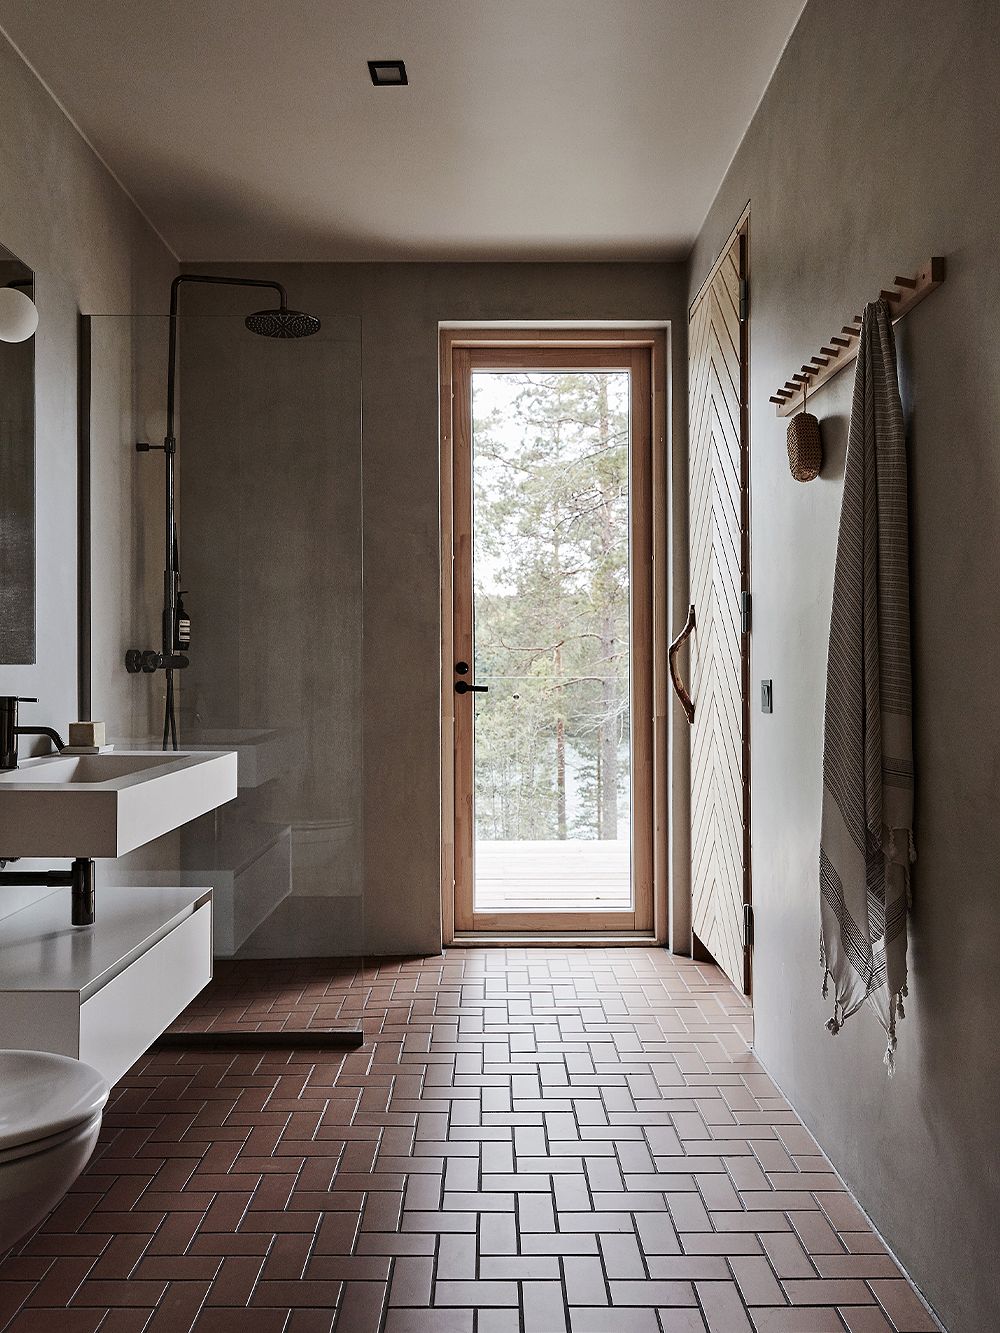 A modern bathroom with tile floor